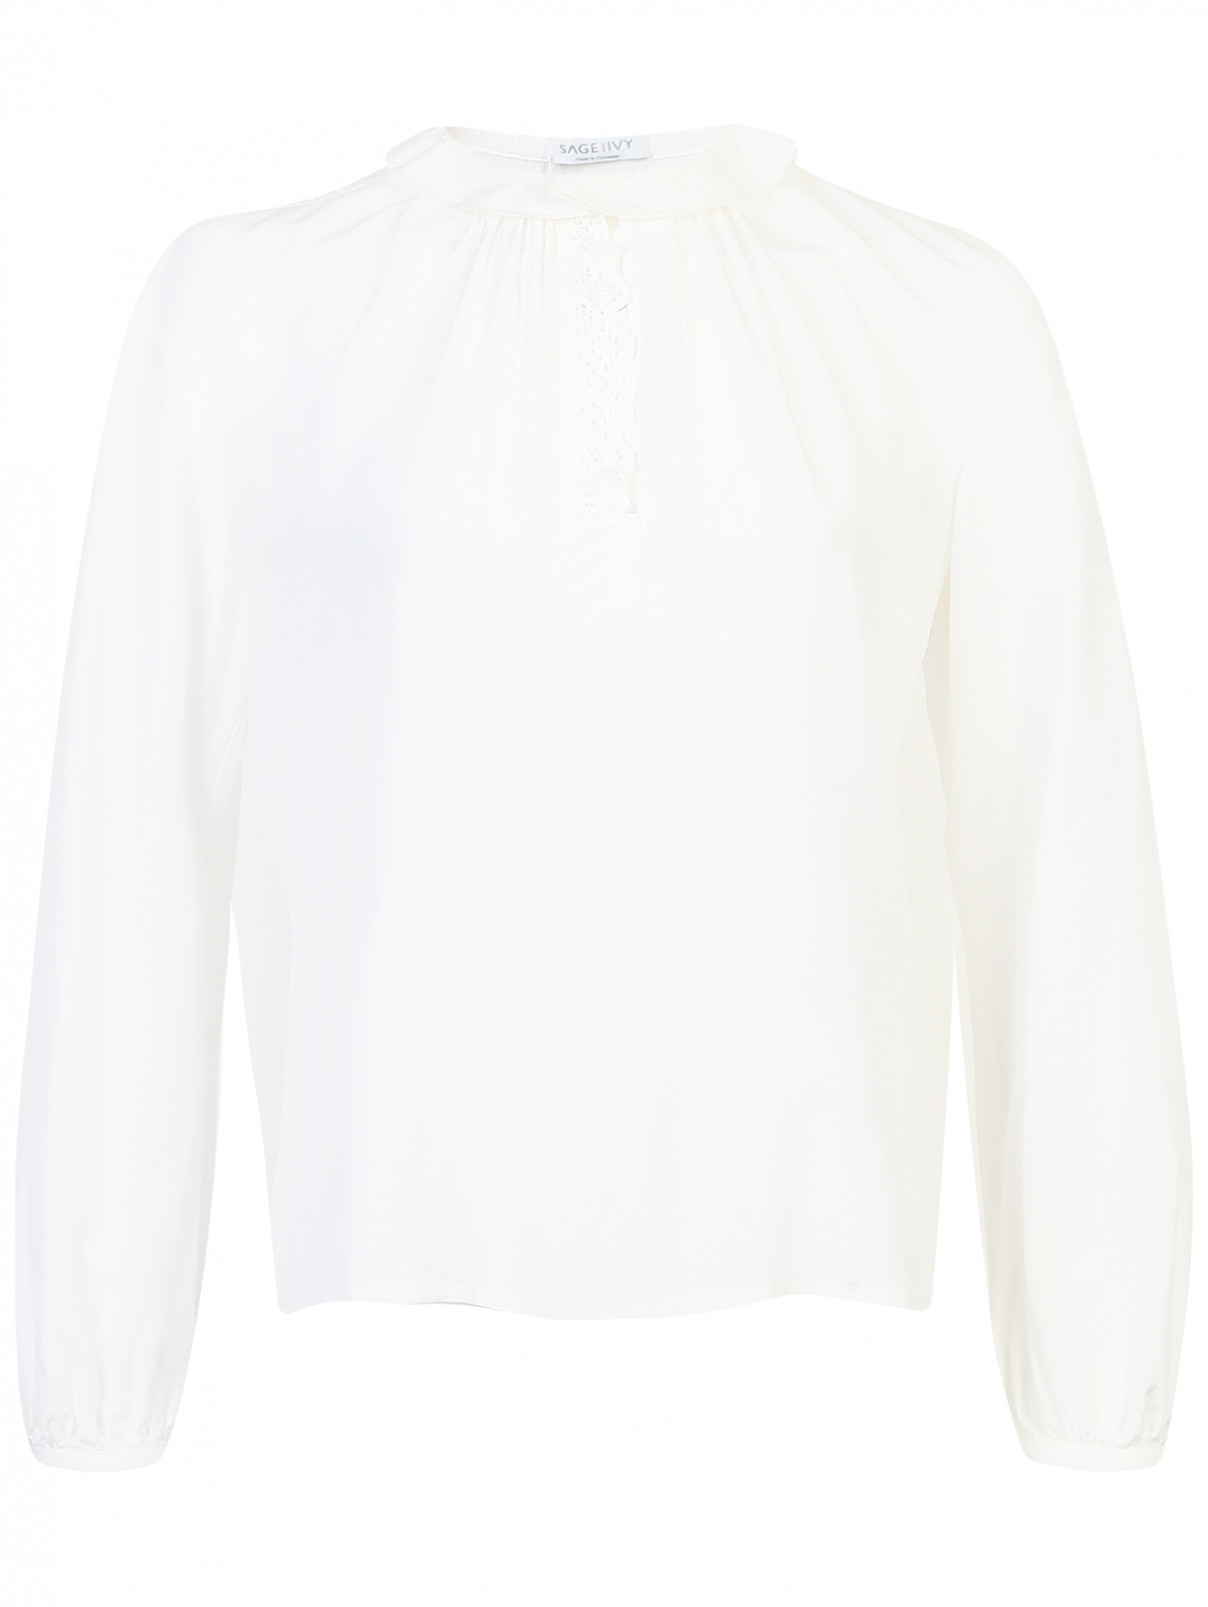 Блуза с кружевной вставкой Sage and Ivy  –  Общий вид  – Цвет:  Белый